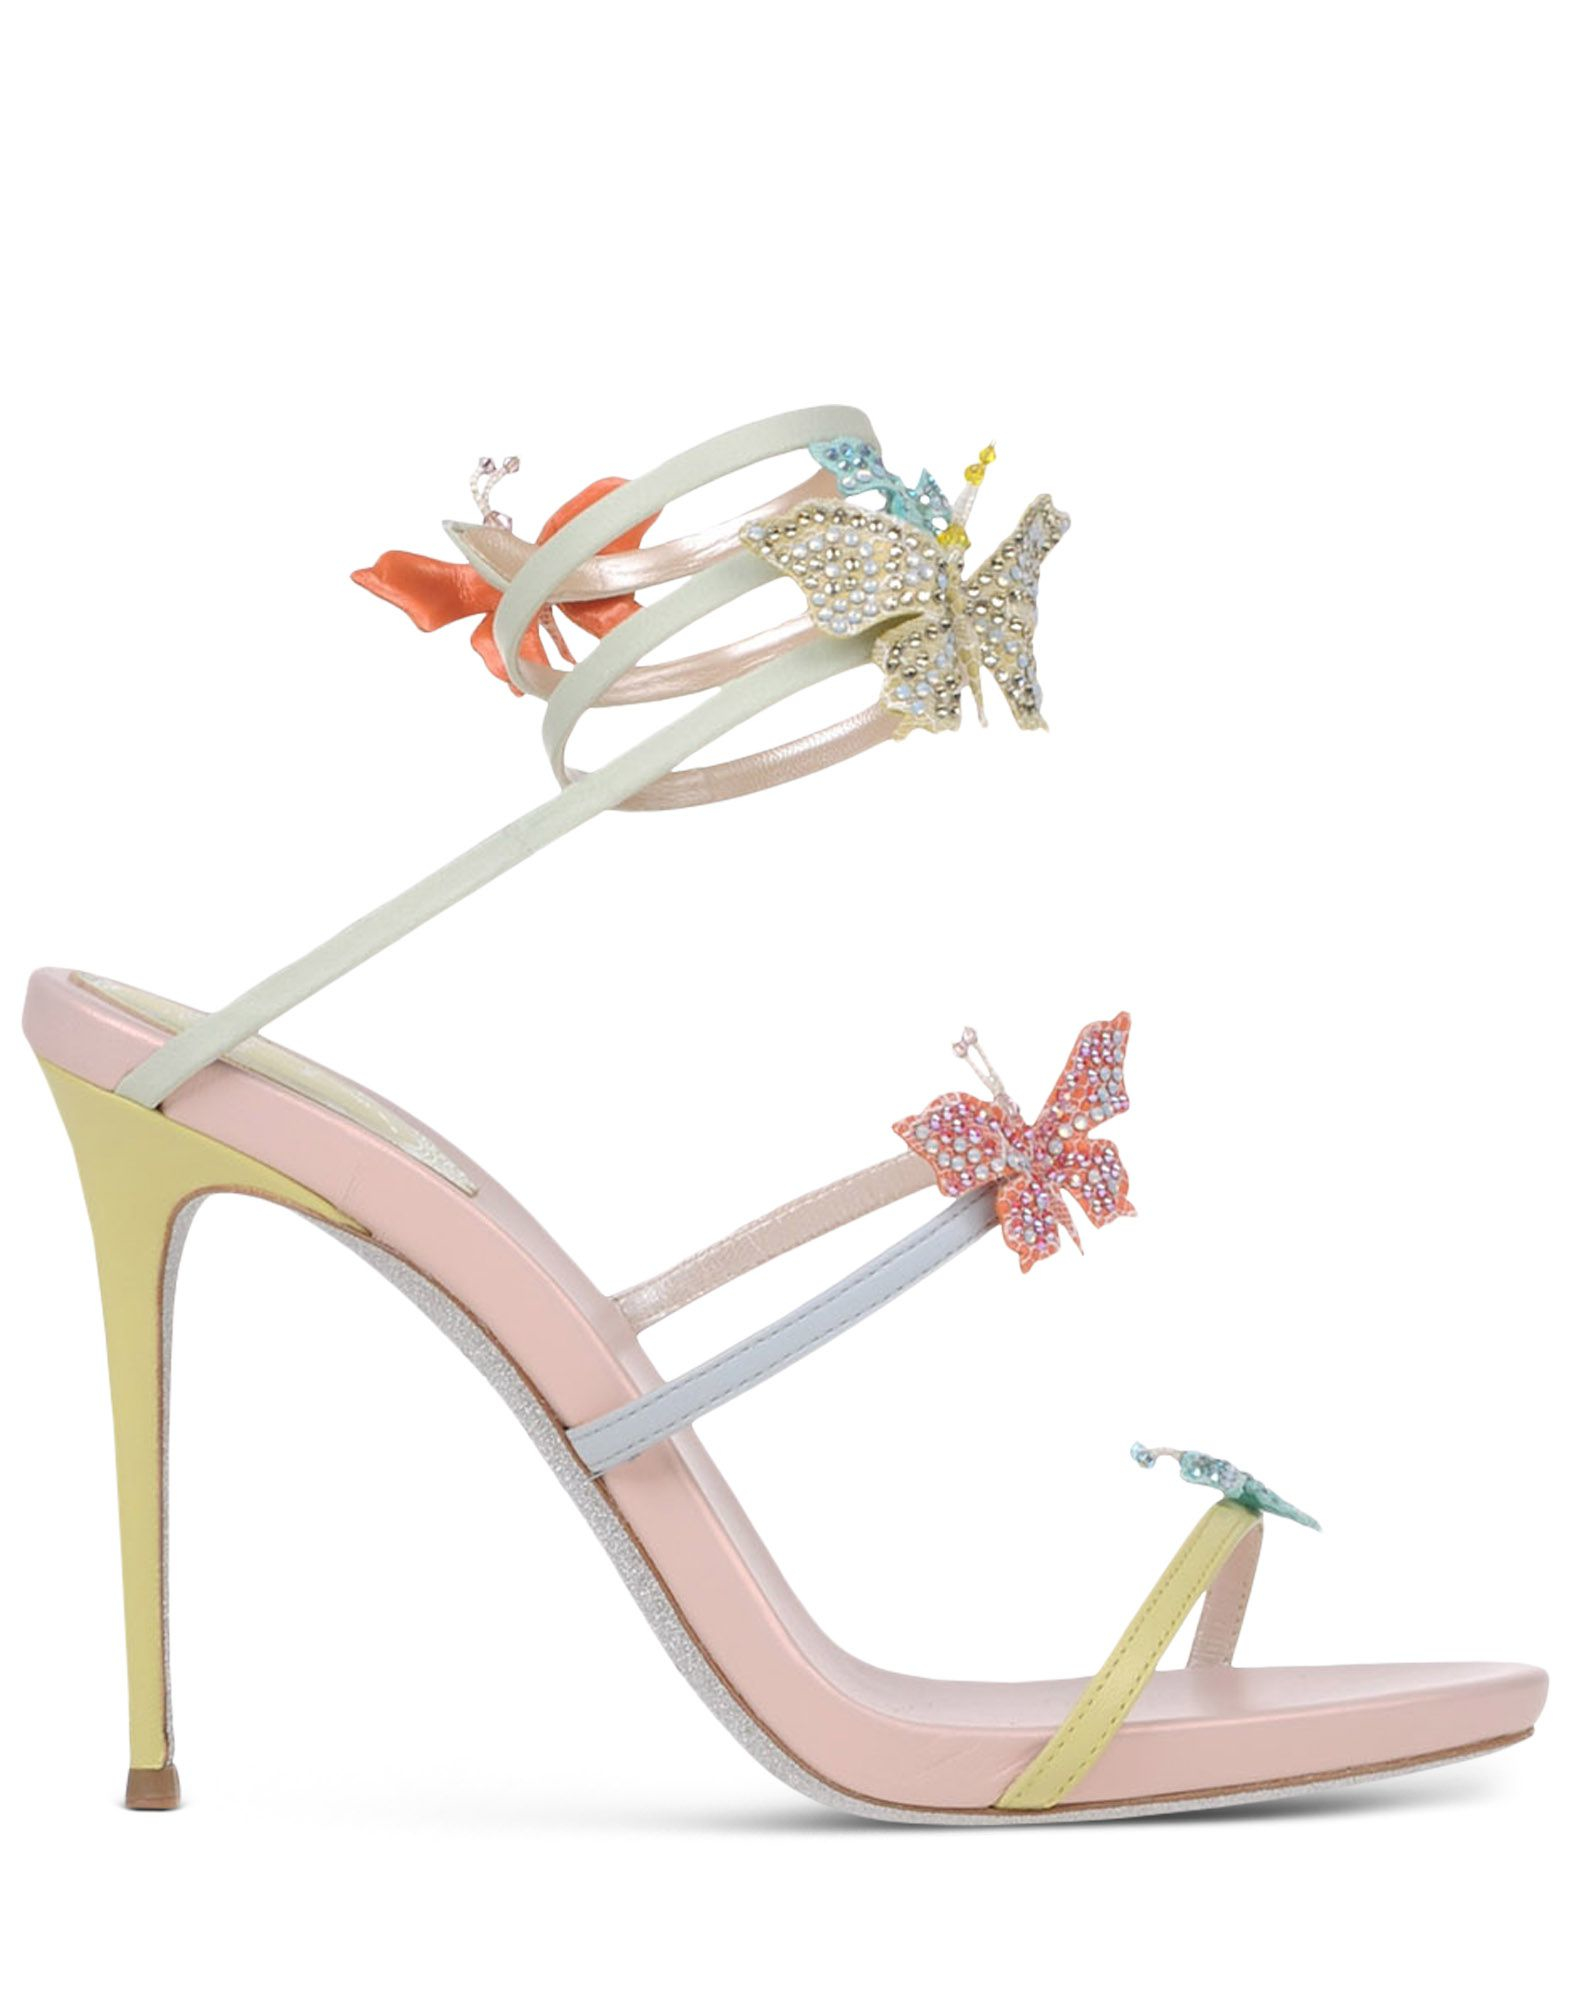 Rene caovilla Butterfly-Embellished Lambskin Sandals in Multicolor ...